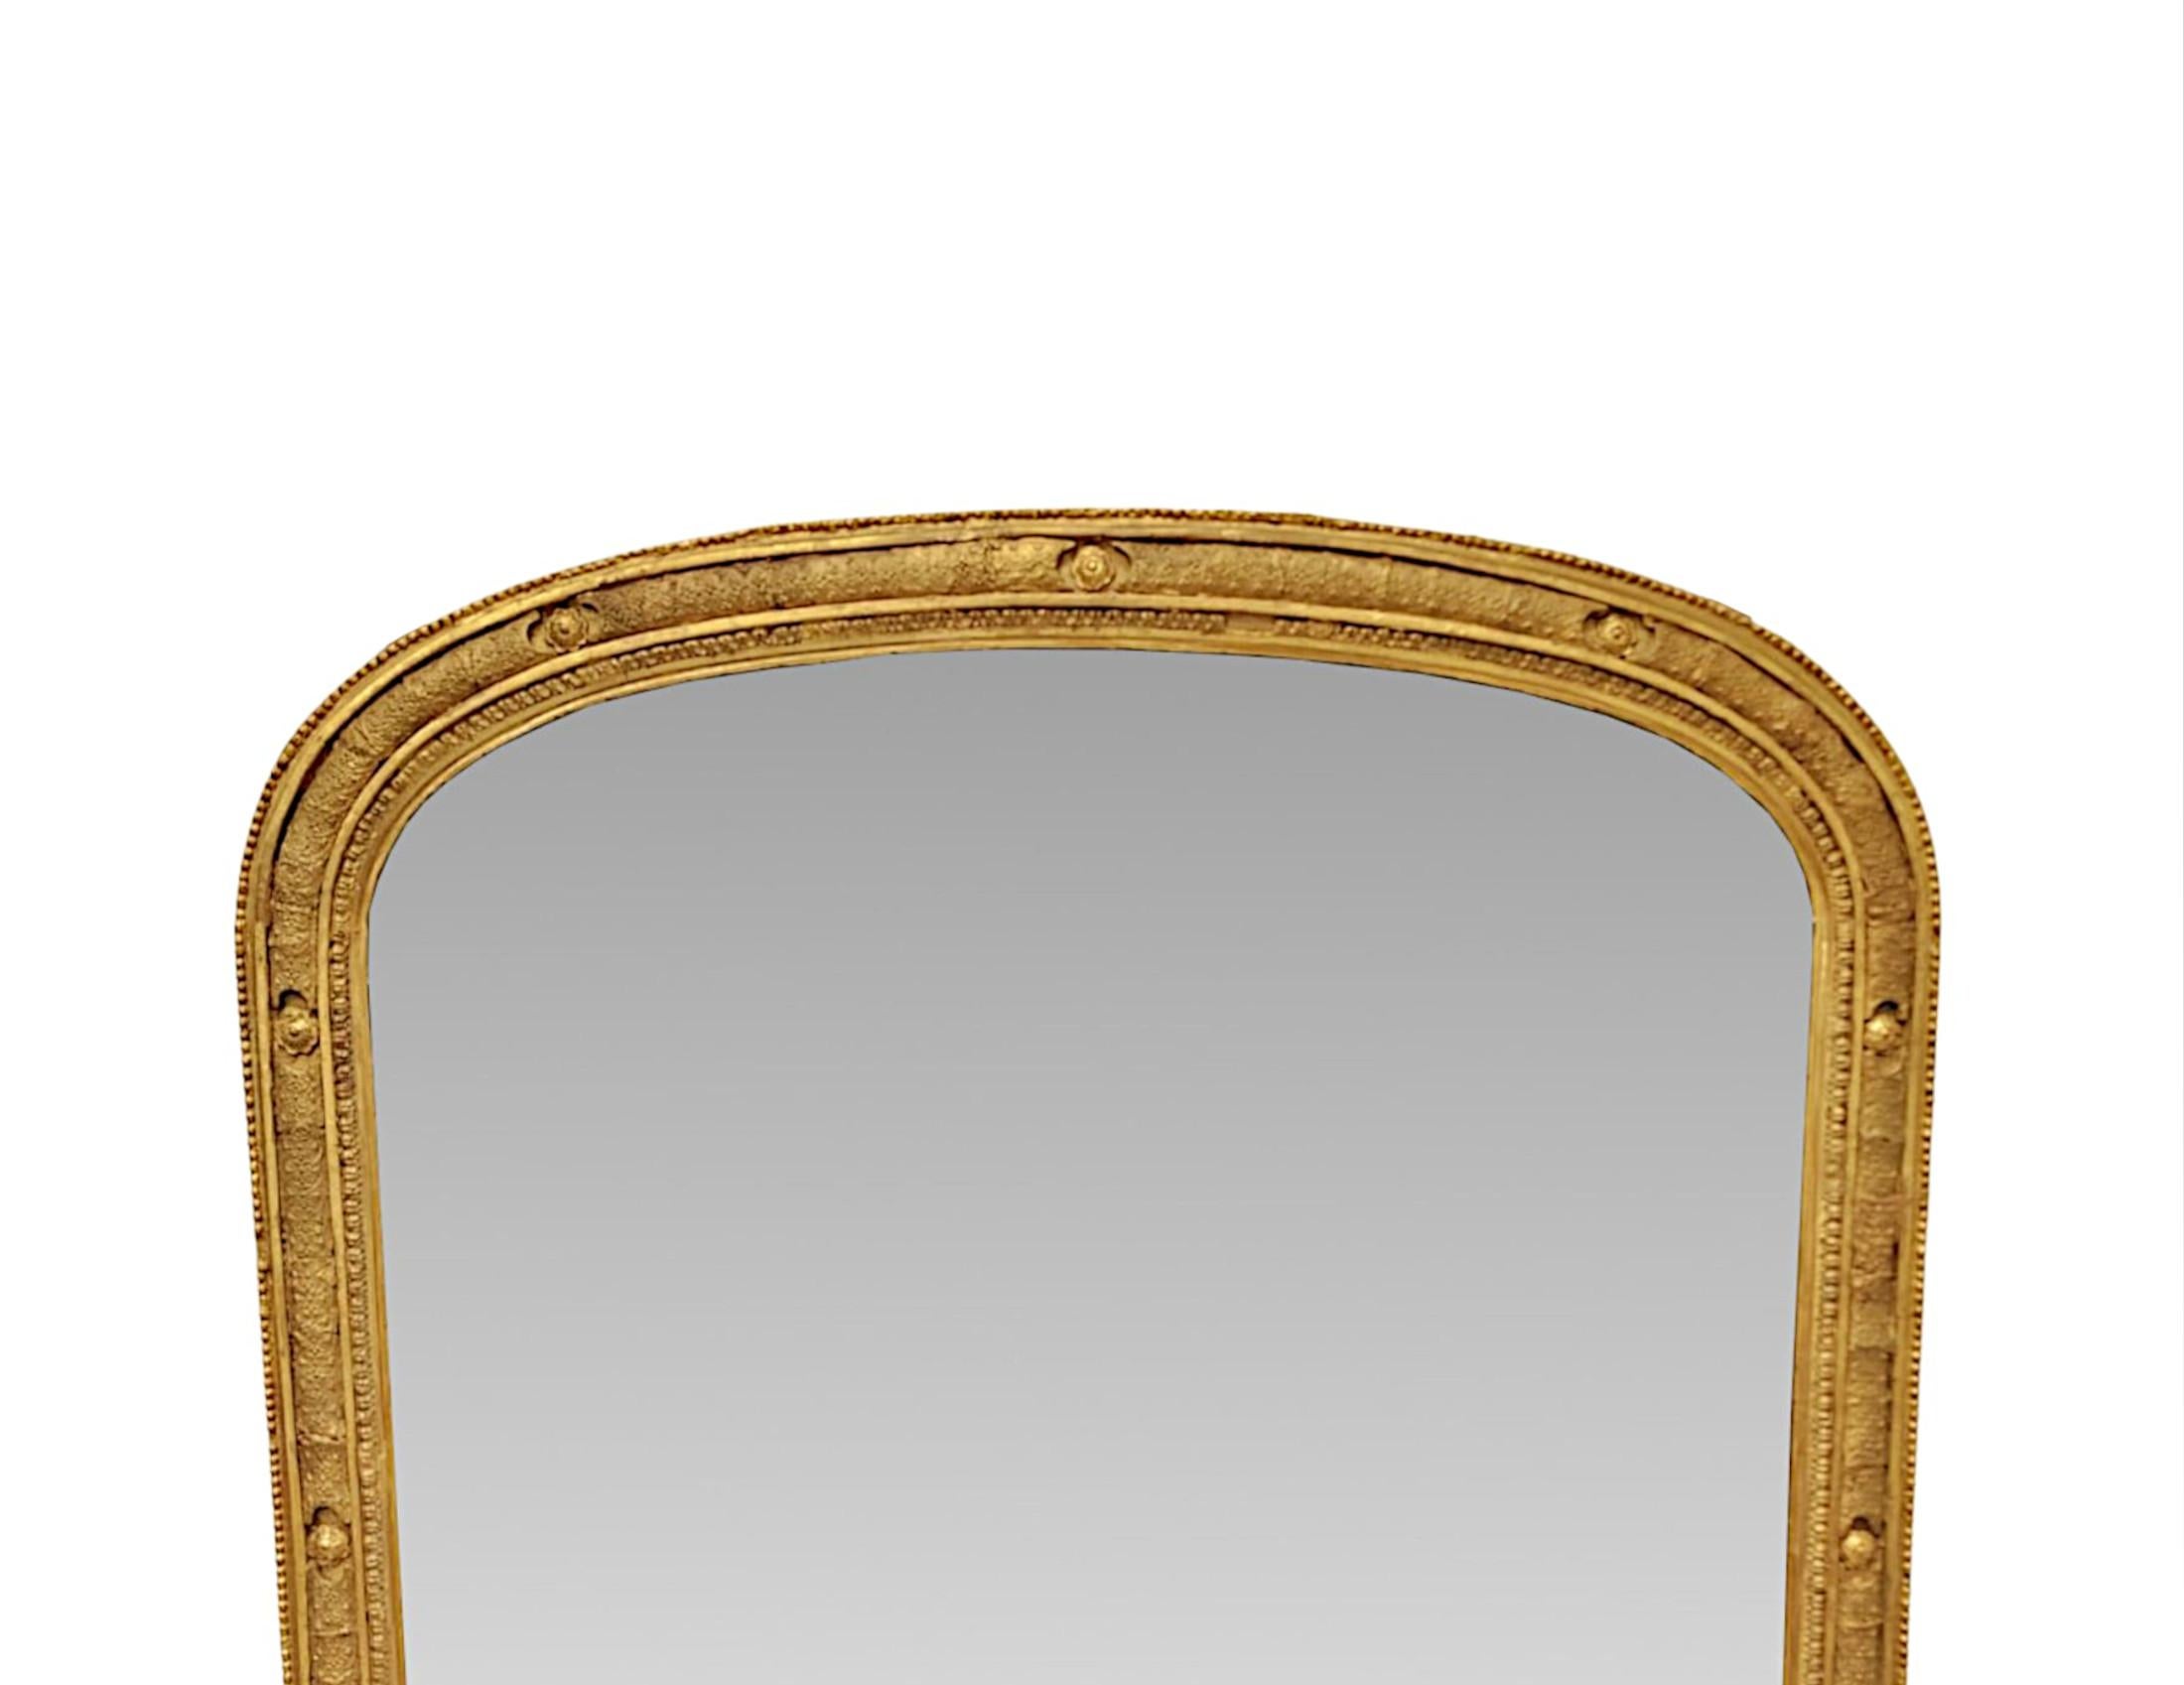 Eine sehr feine 19. Jahrhundert elegant einfach, vergoldet Overmantel Spiegel von außergewöhnlicher Qualität und ordentlich Proportionen.  Die geformte Spiegelglasplatte in Bogenform befindet sich in einem atemberaubenden handgeschnitzten, geformten